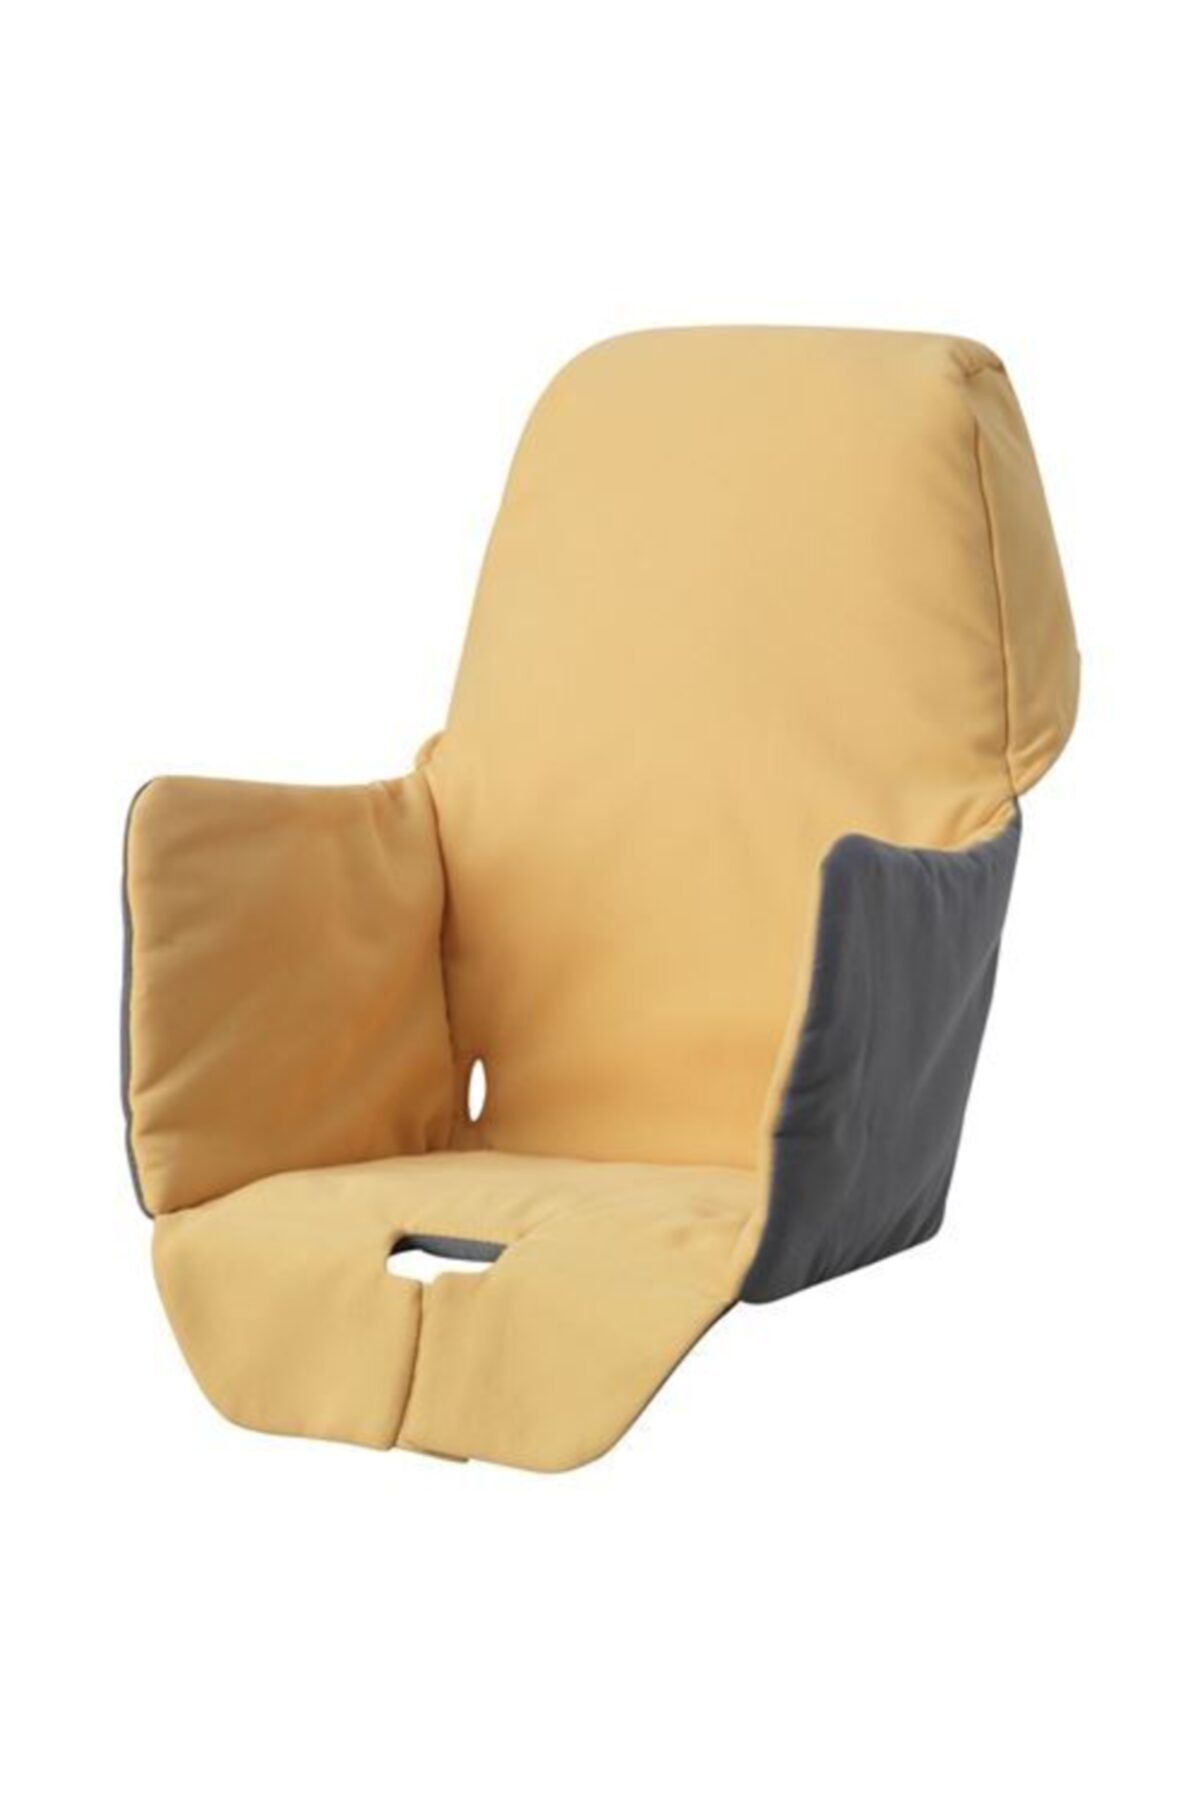 IKEA Sarı Renk Cırt Cırt Bant Mama Sandalyesi Pedi Destek Minderi